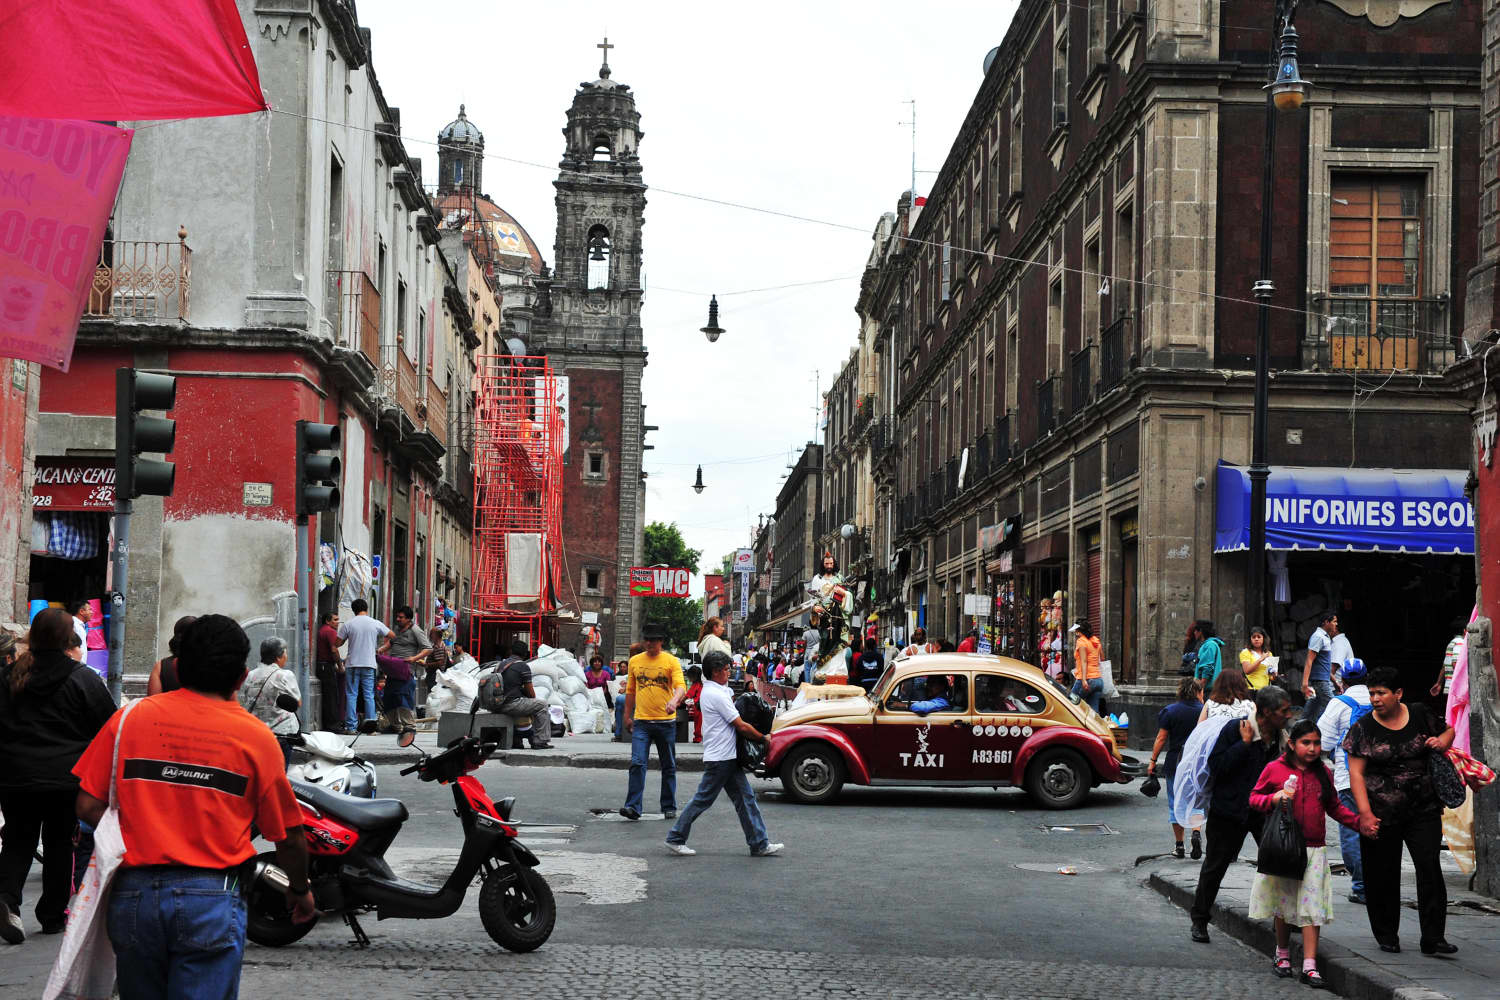 Живет на улице на английском. Мехико Сити улицы. Центр Мехико Сити улицы. Центральная улица Мехико. Мехико Сити улицы с людьми.